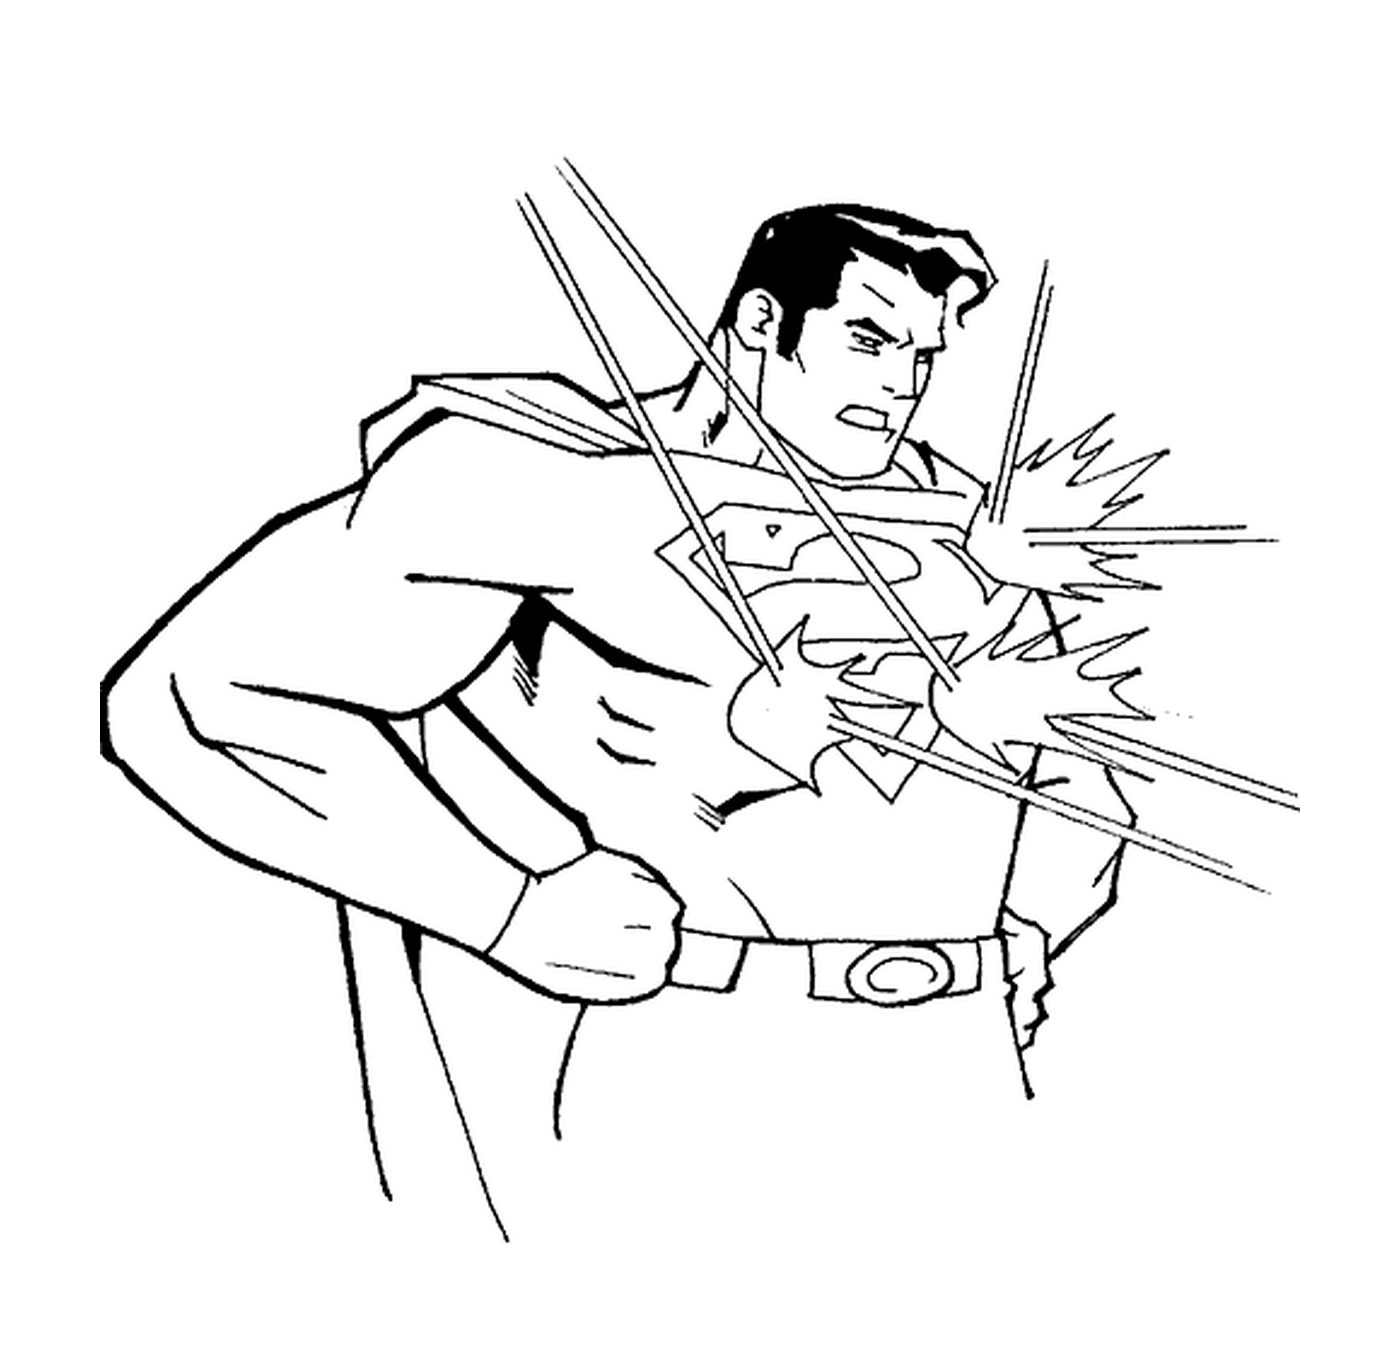  Rayos láser repelentes de Superman 